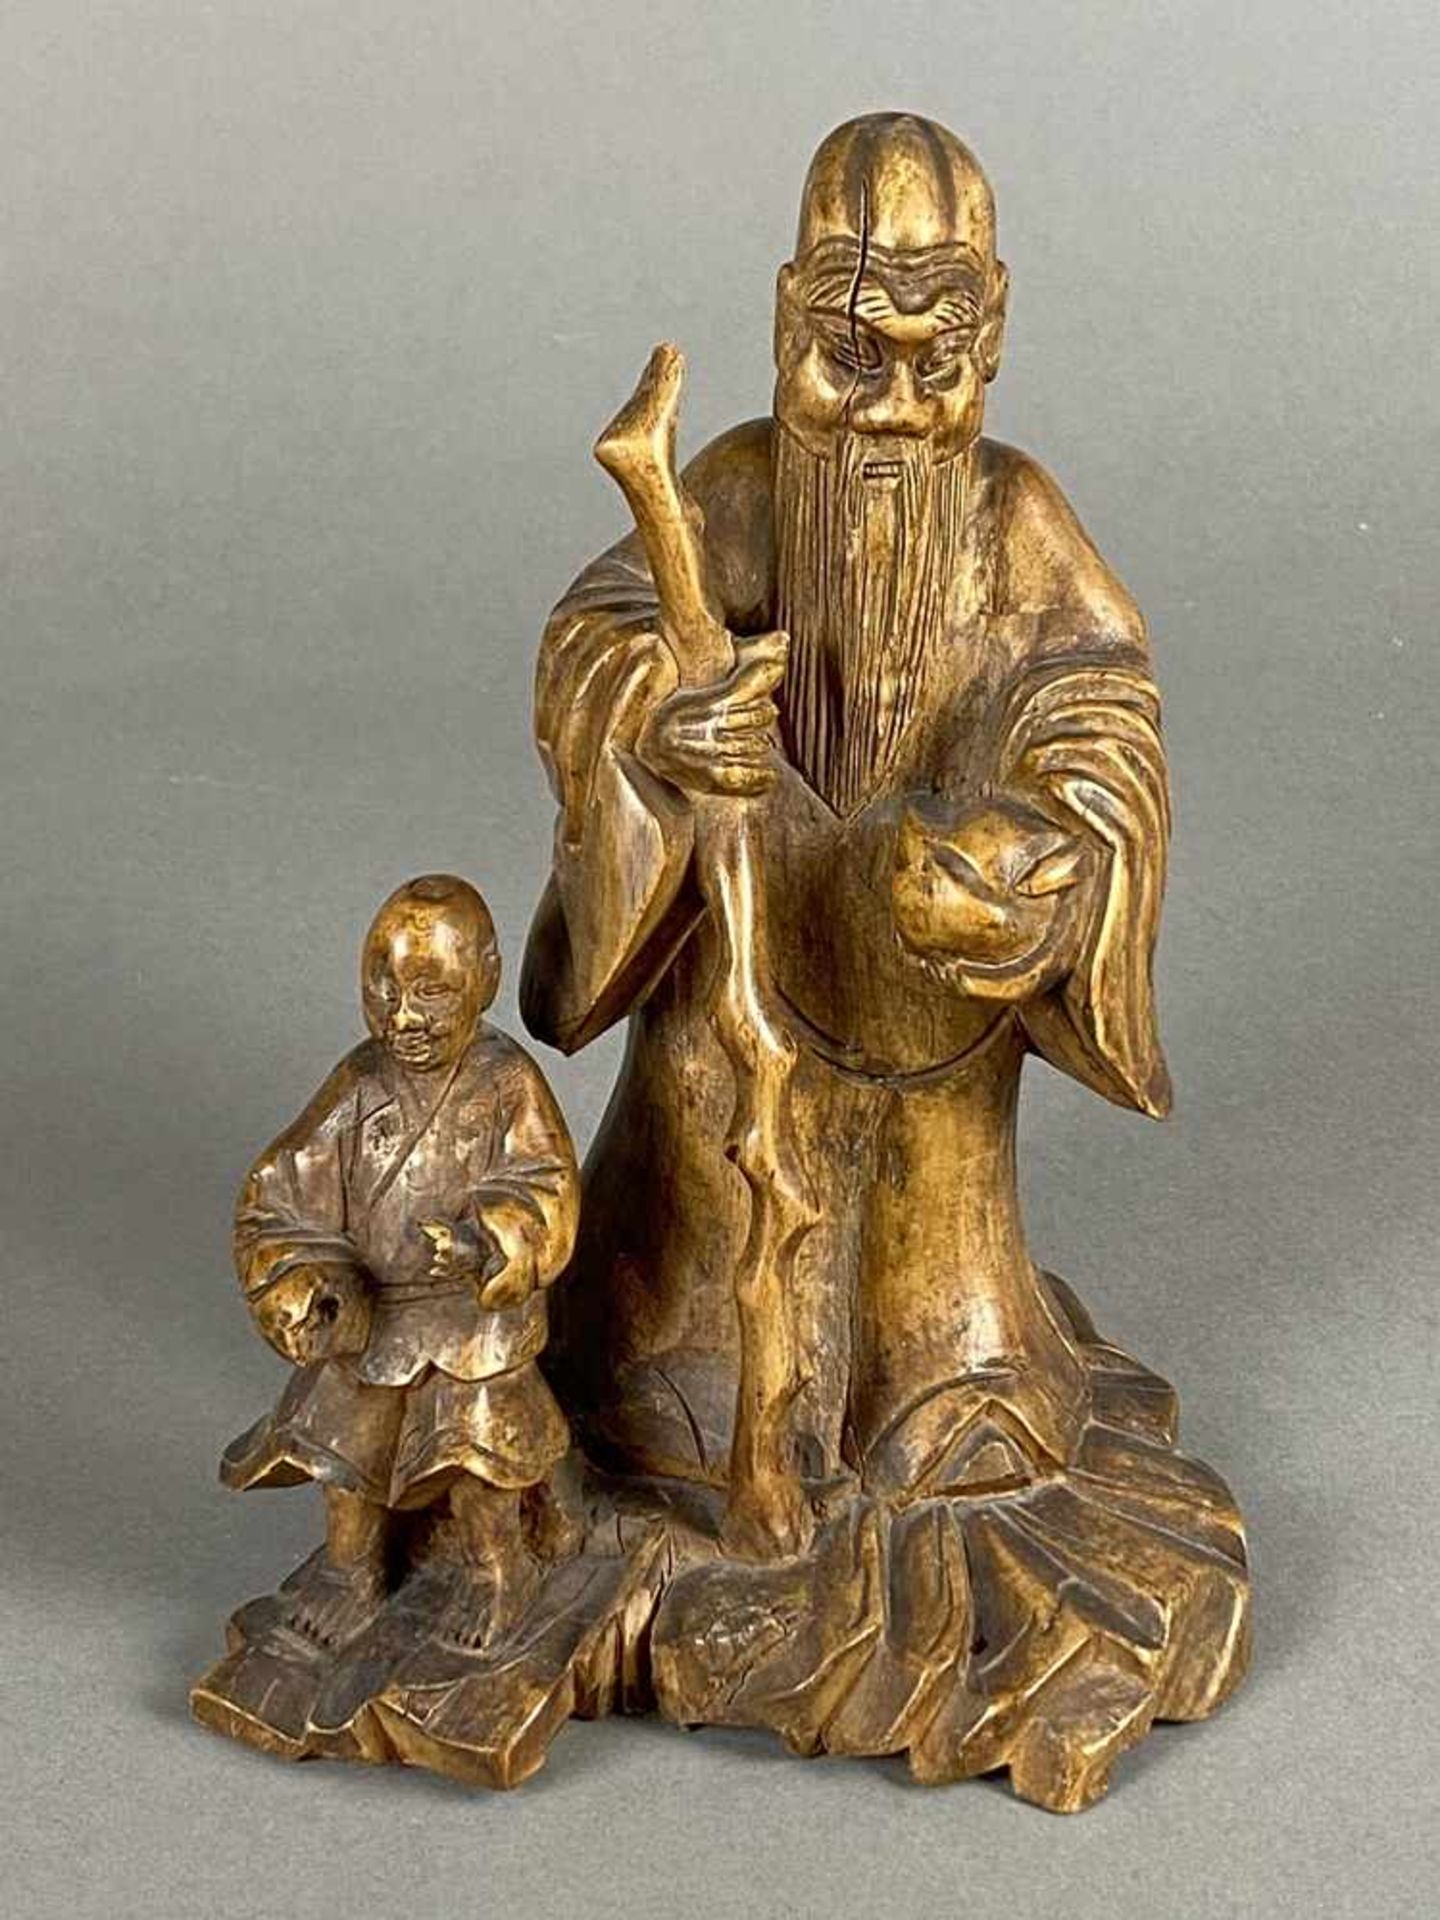 Shoulao mit Dienerknaben - China, Qing-Dynastie, 18./19.Jh., sehr feine Holzschnitzerei, stehend, in